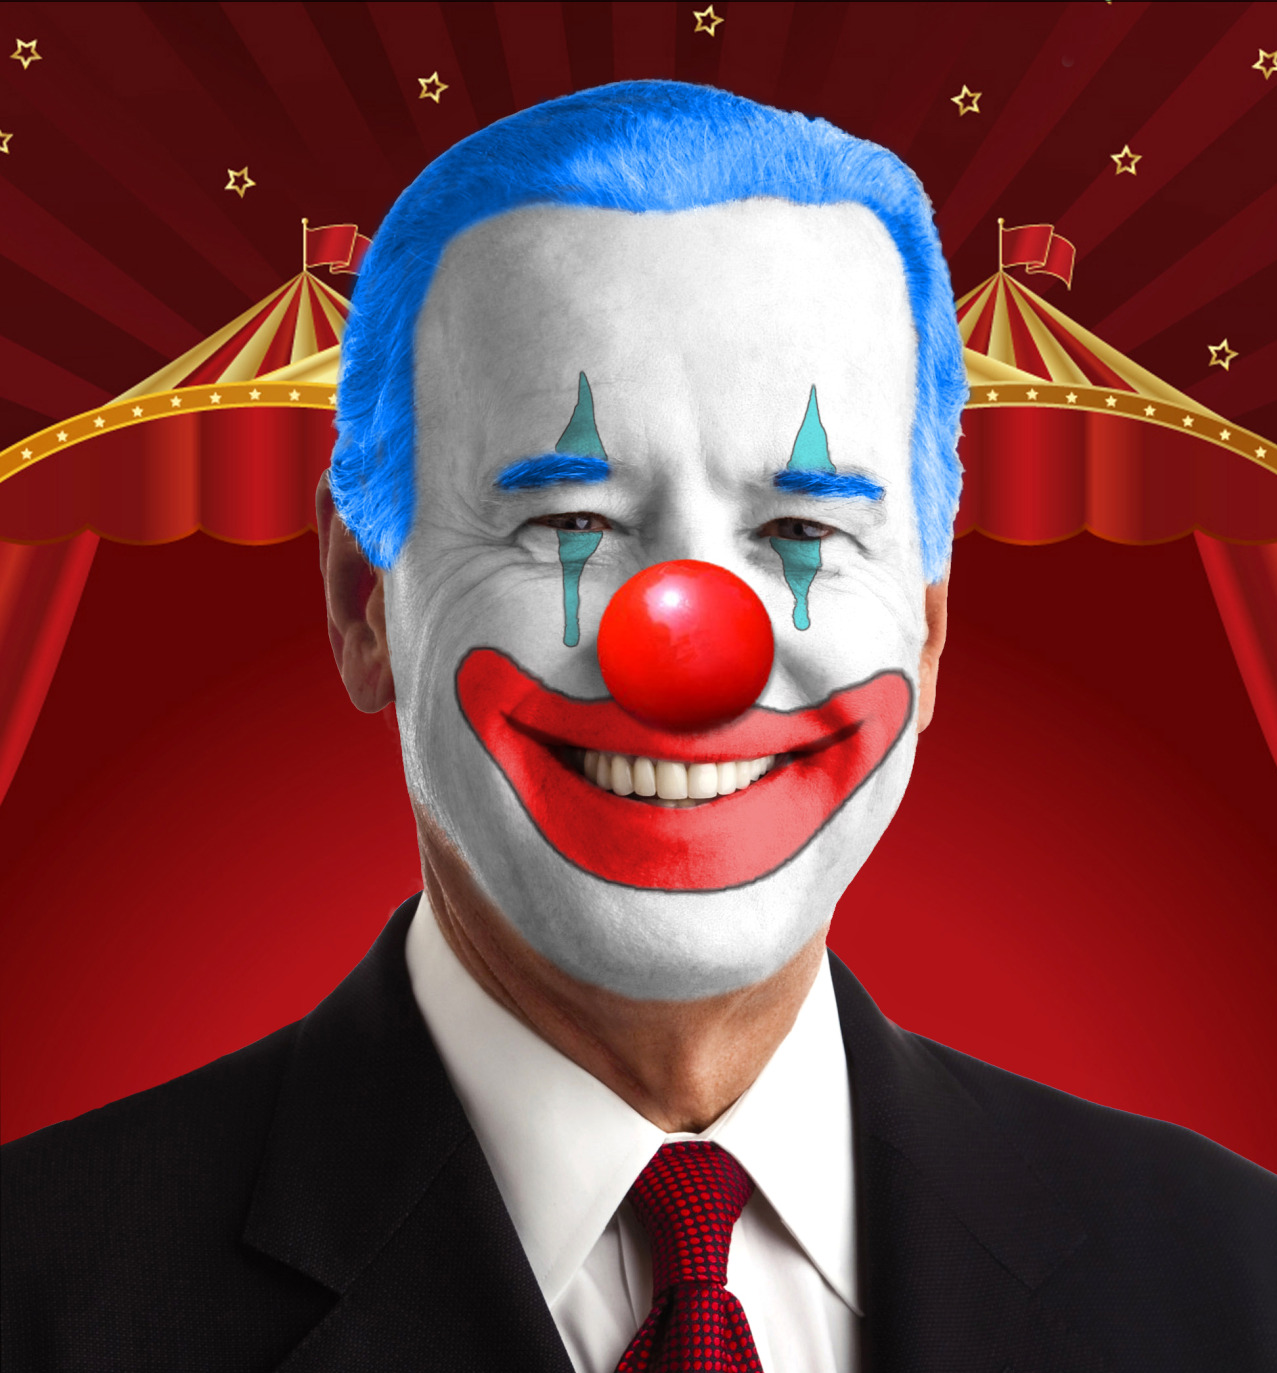 Joe-Biden-clown.jpg